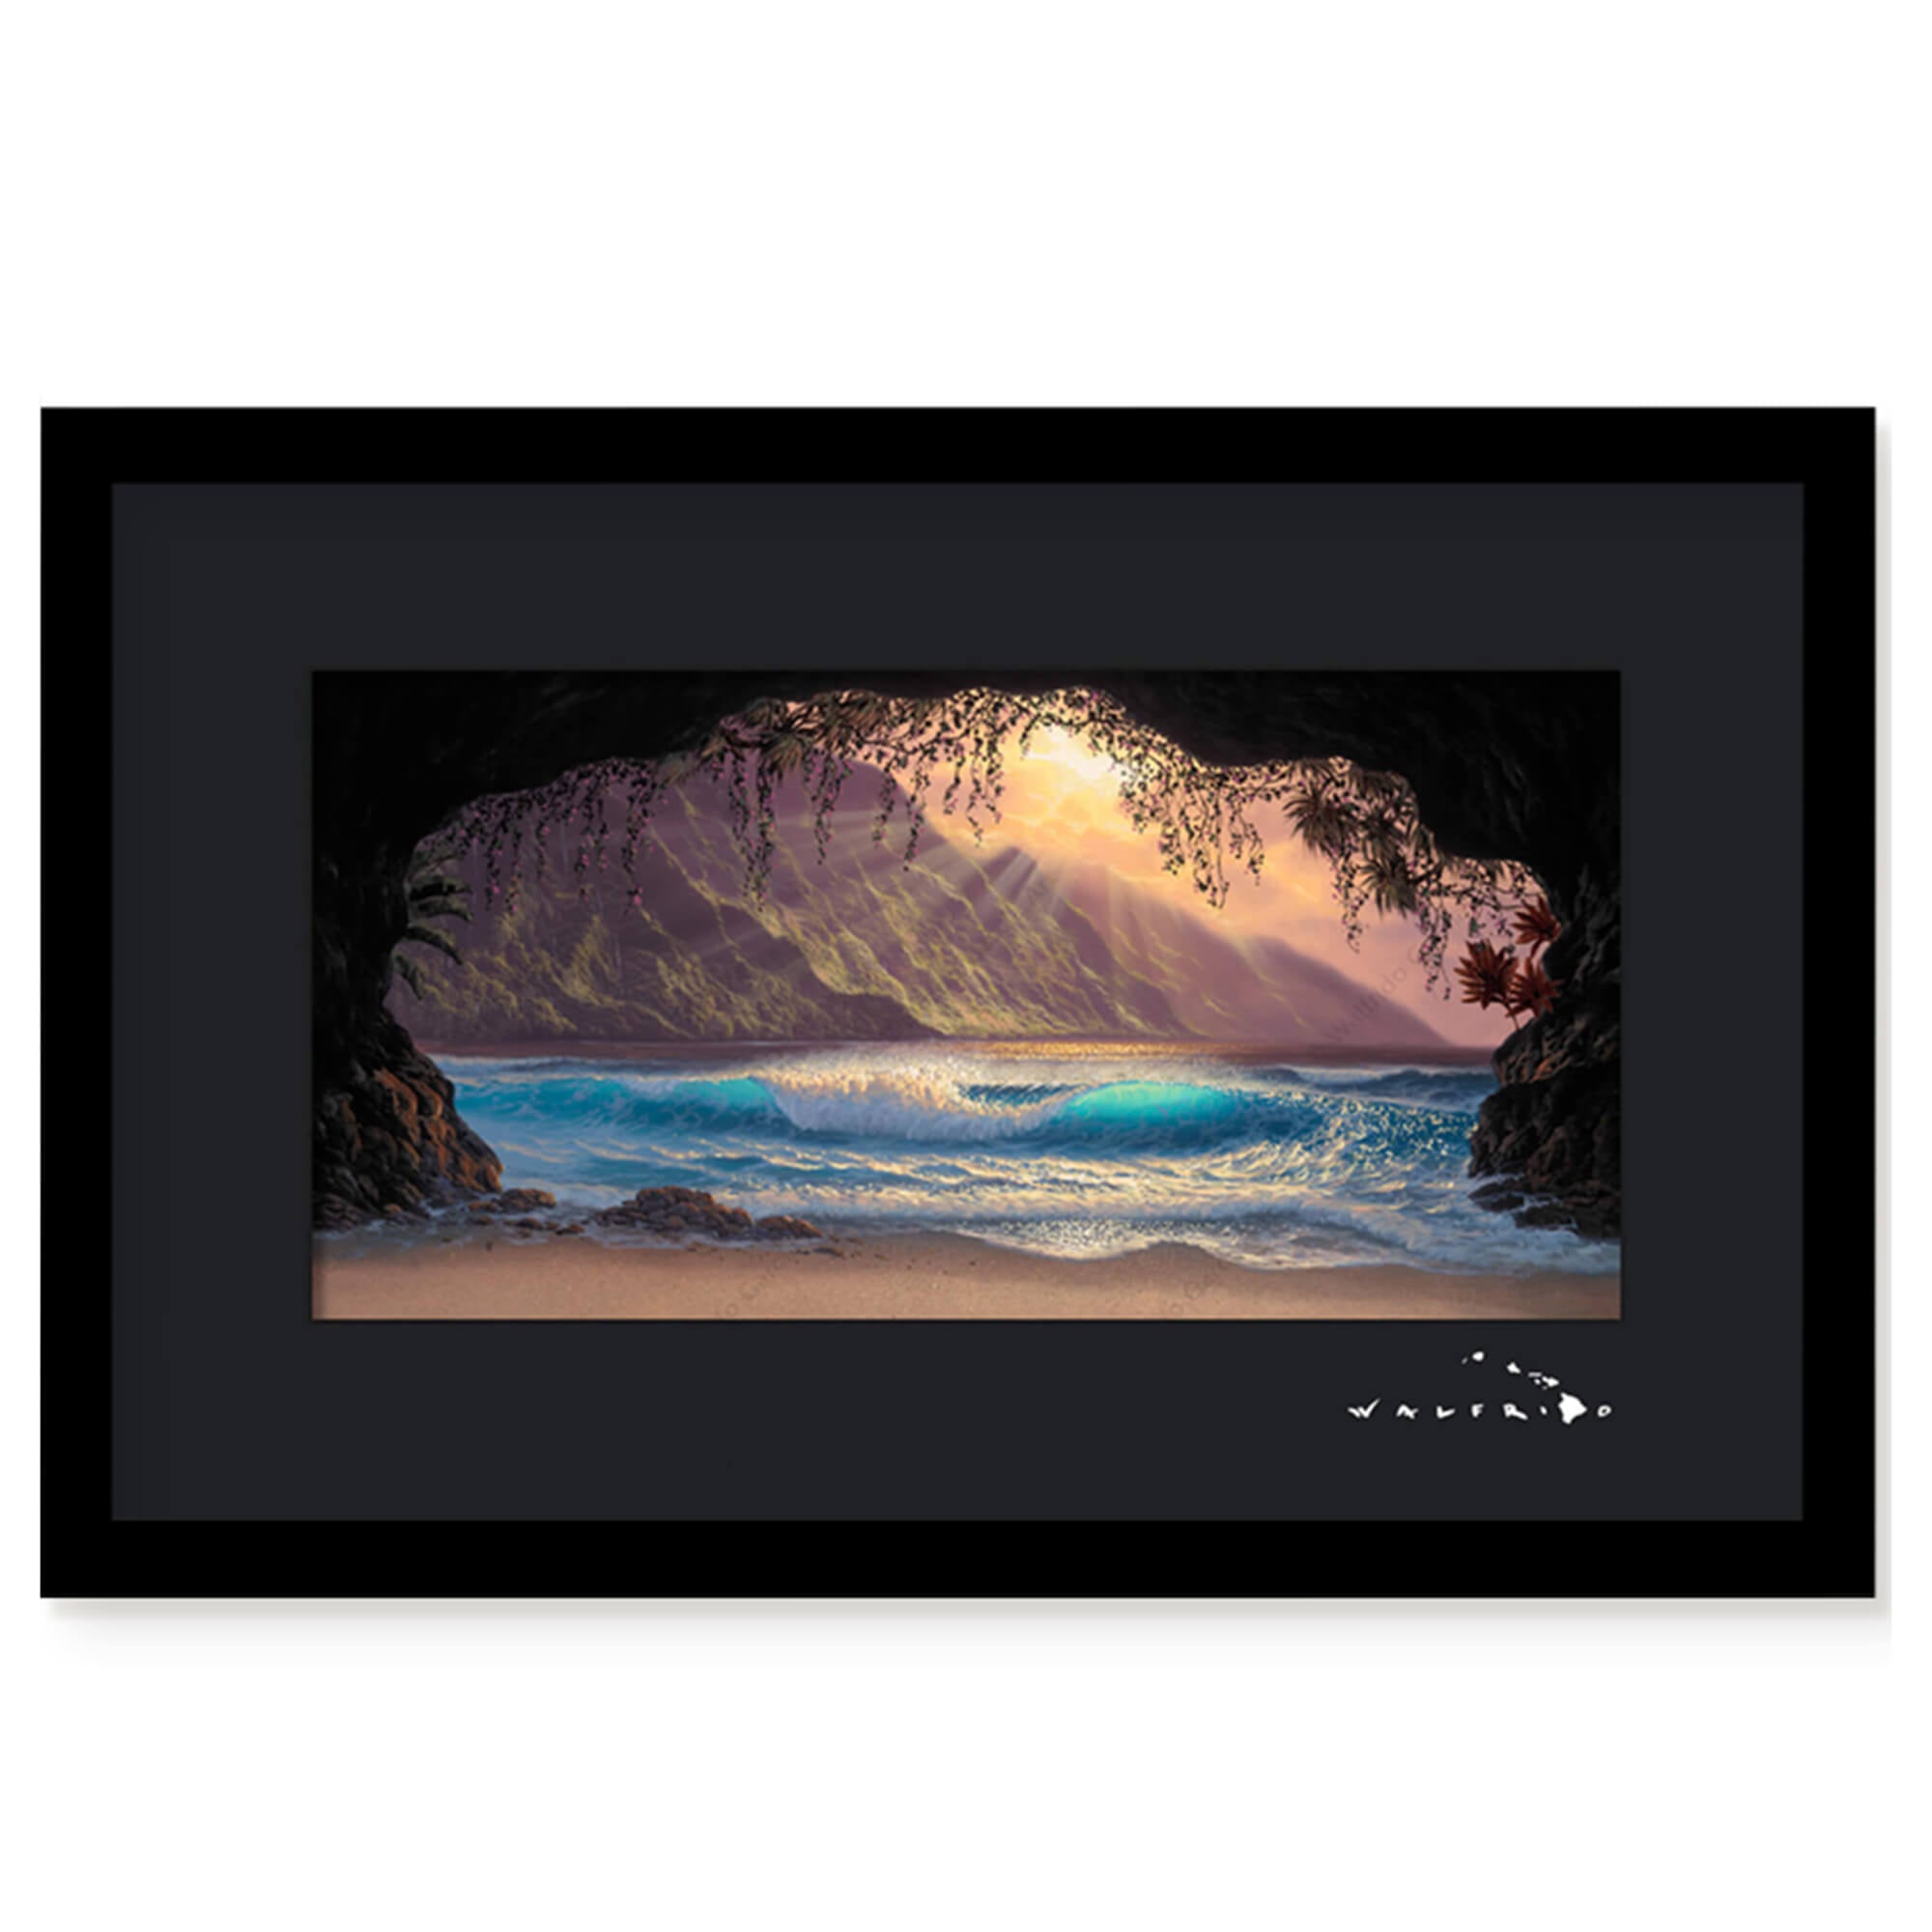 Framed matted art print of a wave as seen from a cove on a sandy Hawaiian beach by Hawaii artist Walfrido Garcia